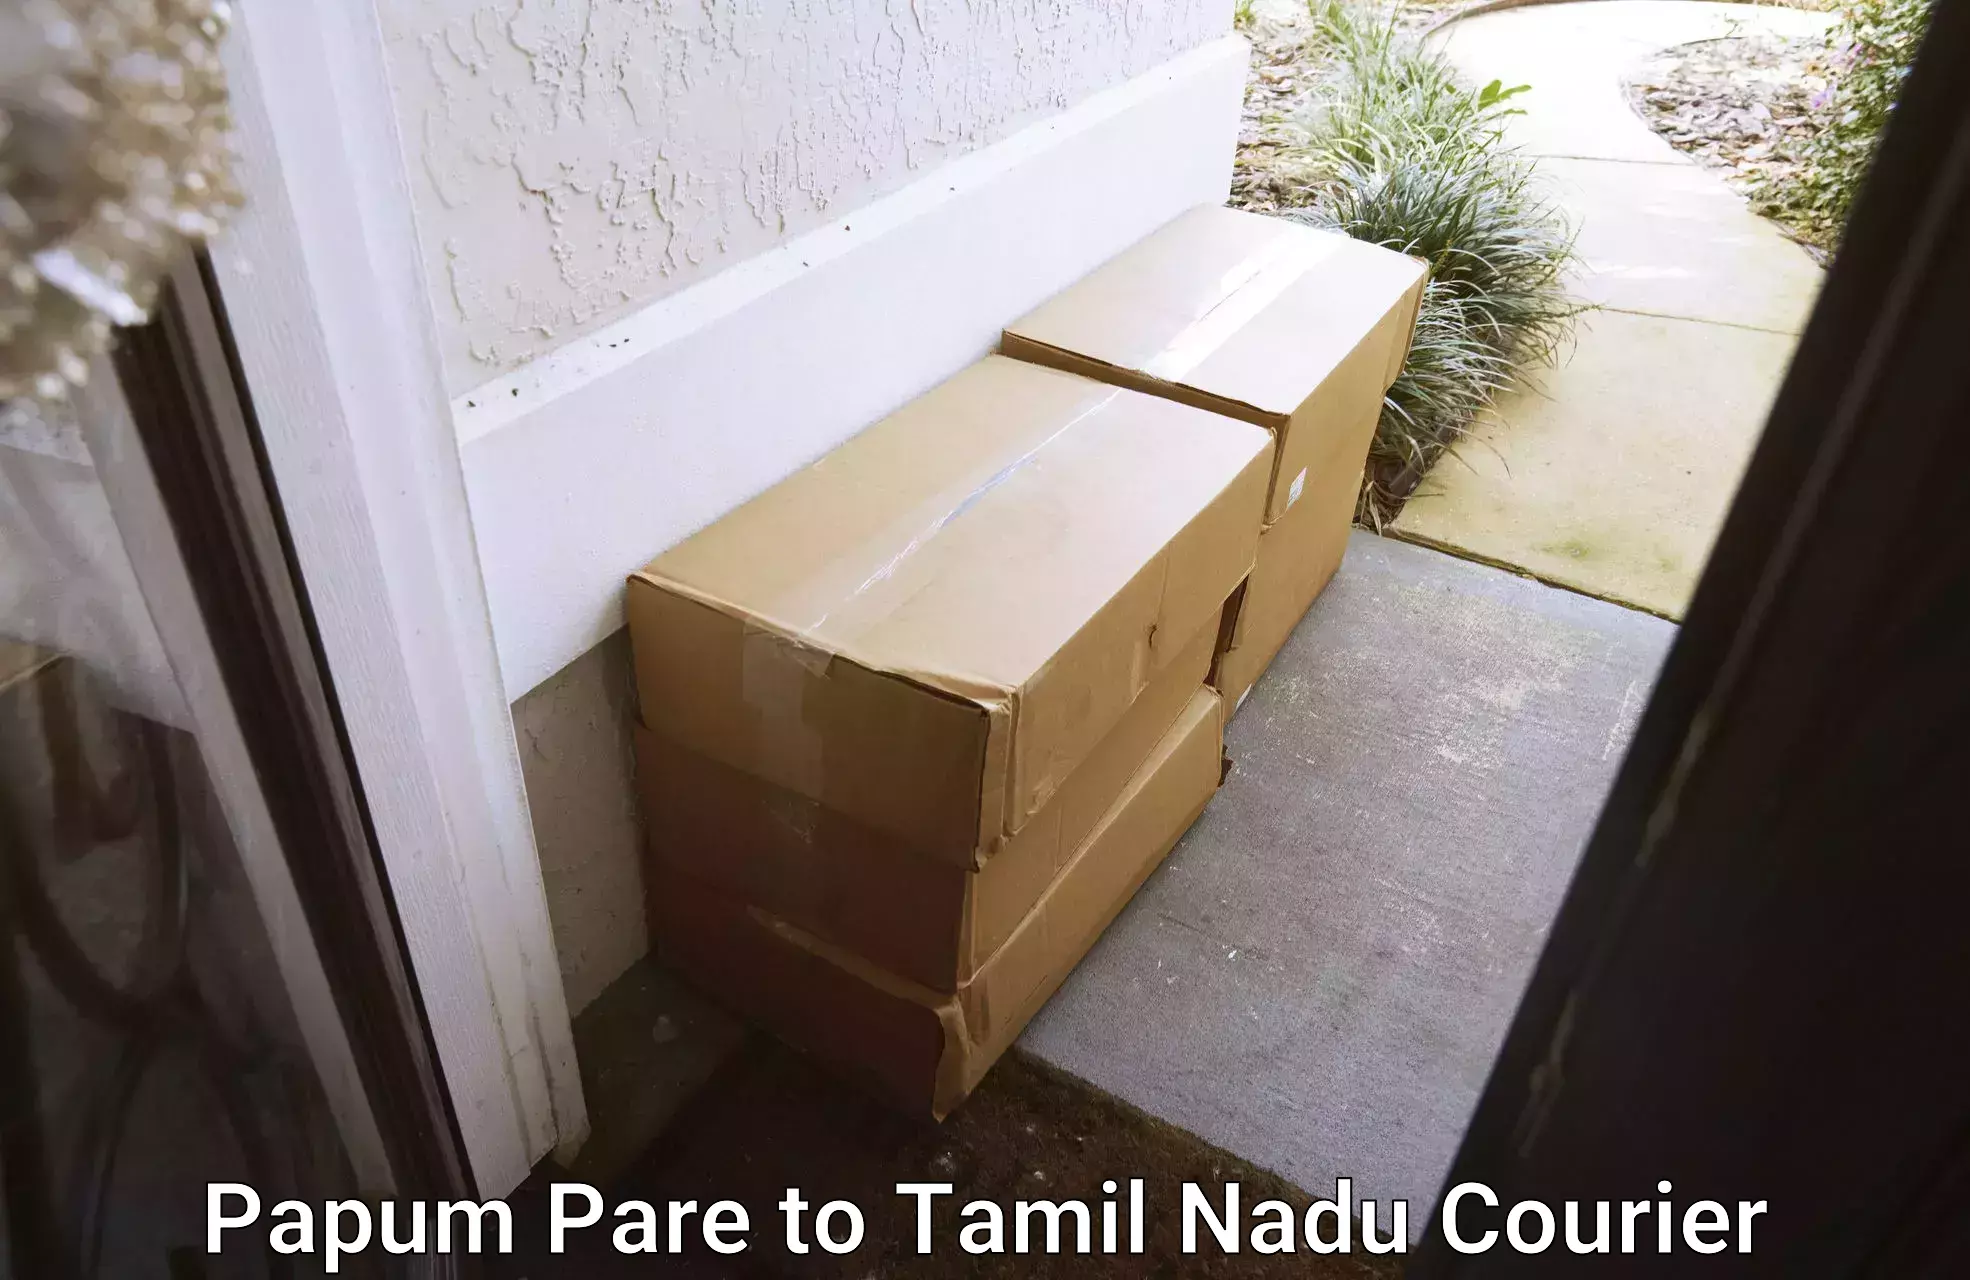 Courier tracking online Papum Pare to IIIT Tiruchirappalli